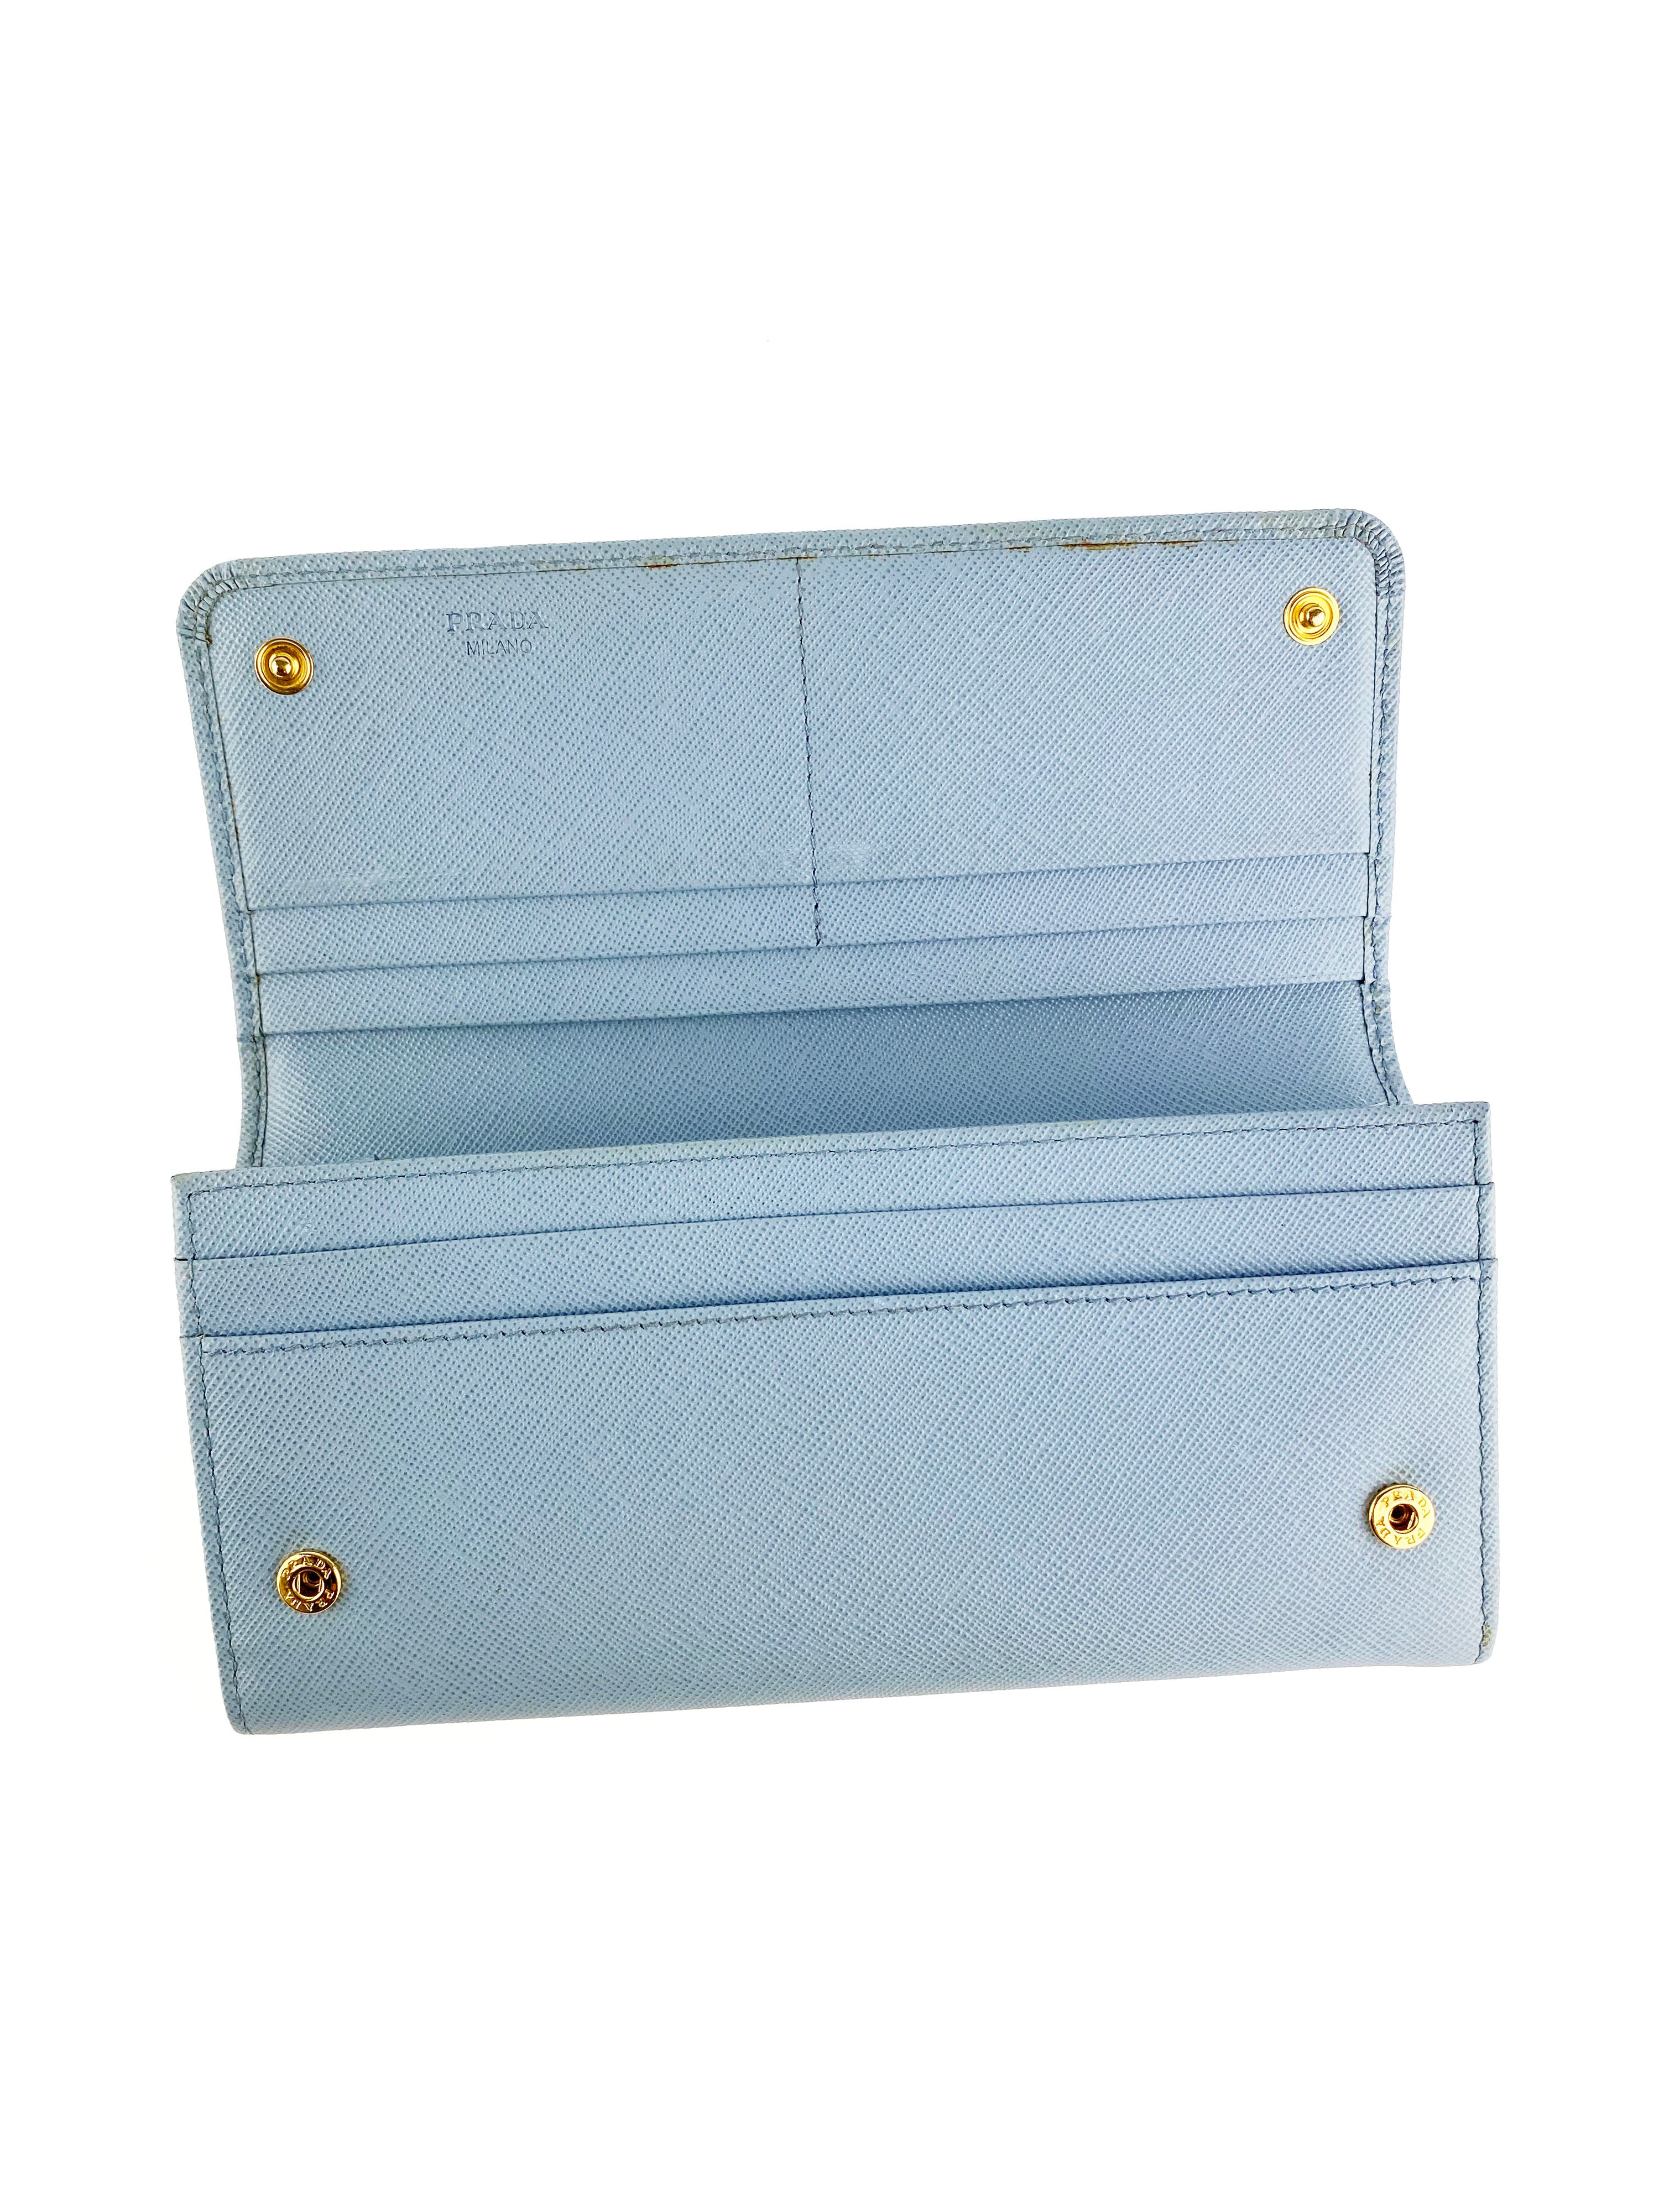 Prada Light Blue Saffiano Bow Wallet